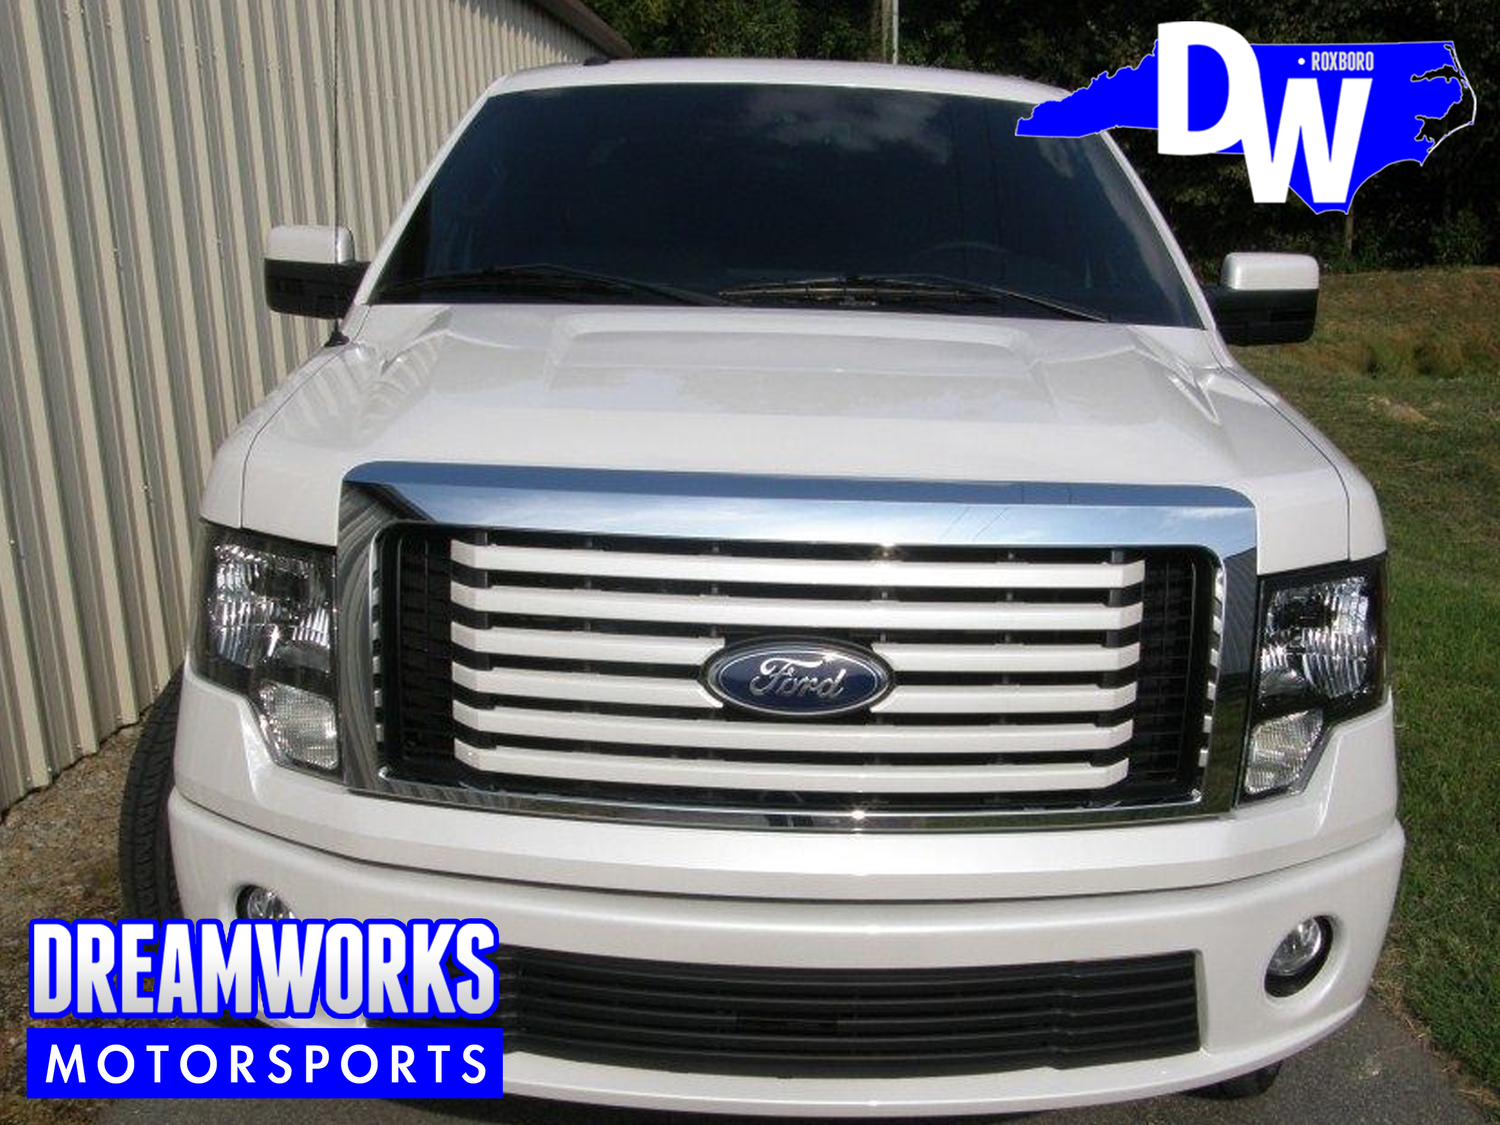 Ford-F150-Bruce-Carter-Dreamworks-Motorsports-3.jpg